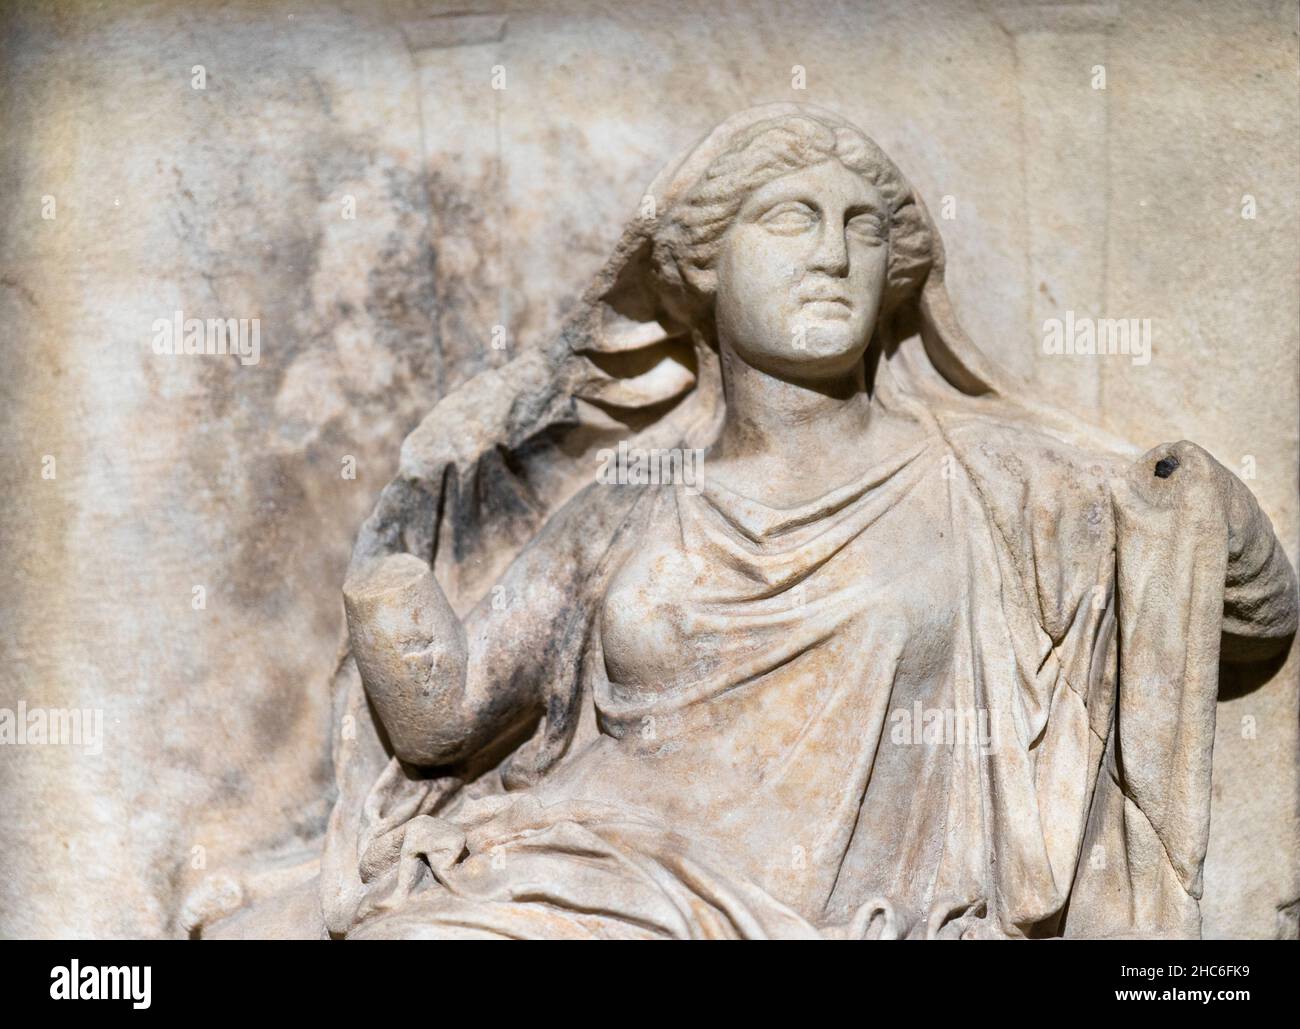 Griechisches Marmorrelief von Demeter, 4. Jahrhundert v. Chr. Archäologiemuseum Istanbul, Türkei. Stockfoto